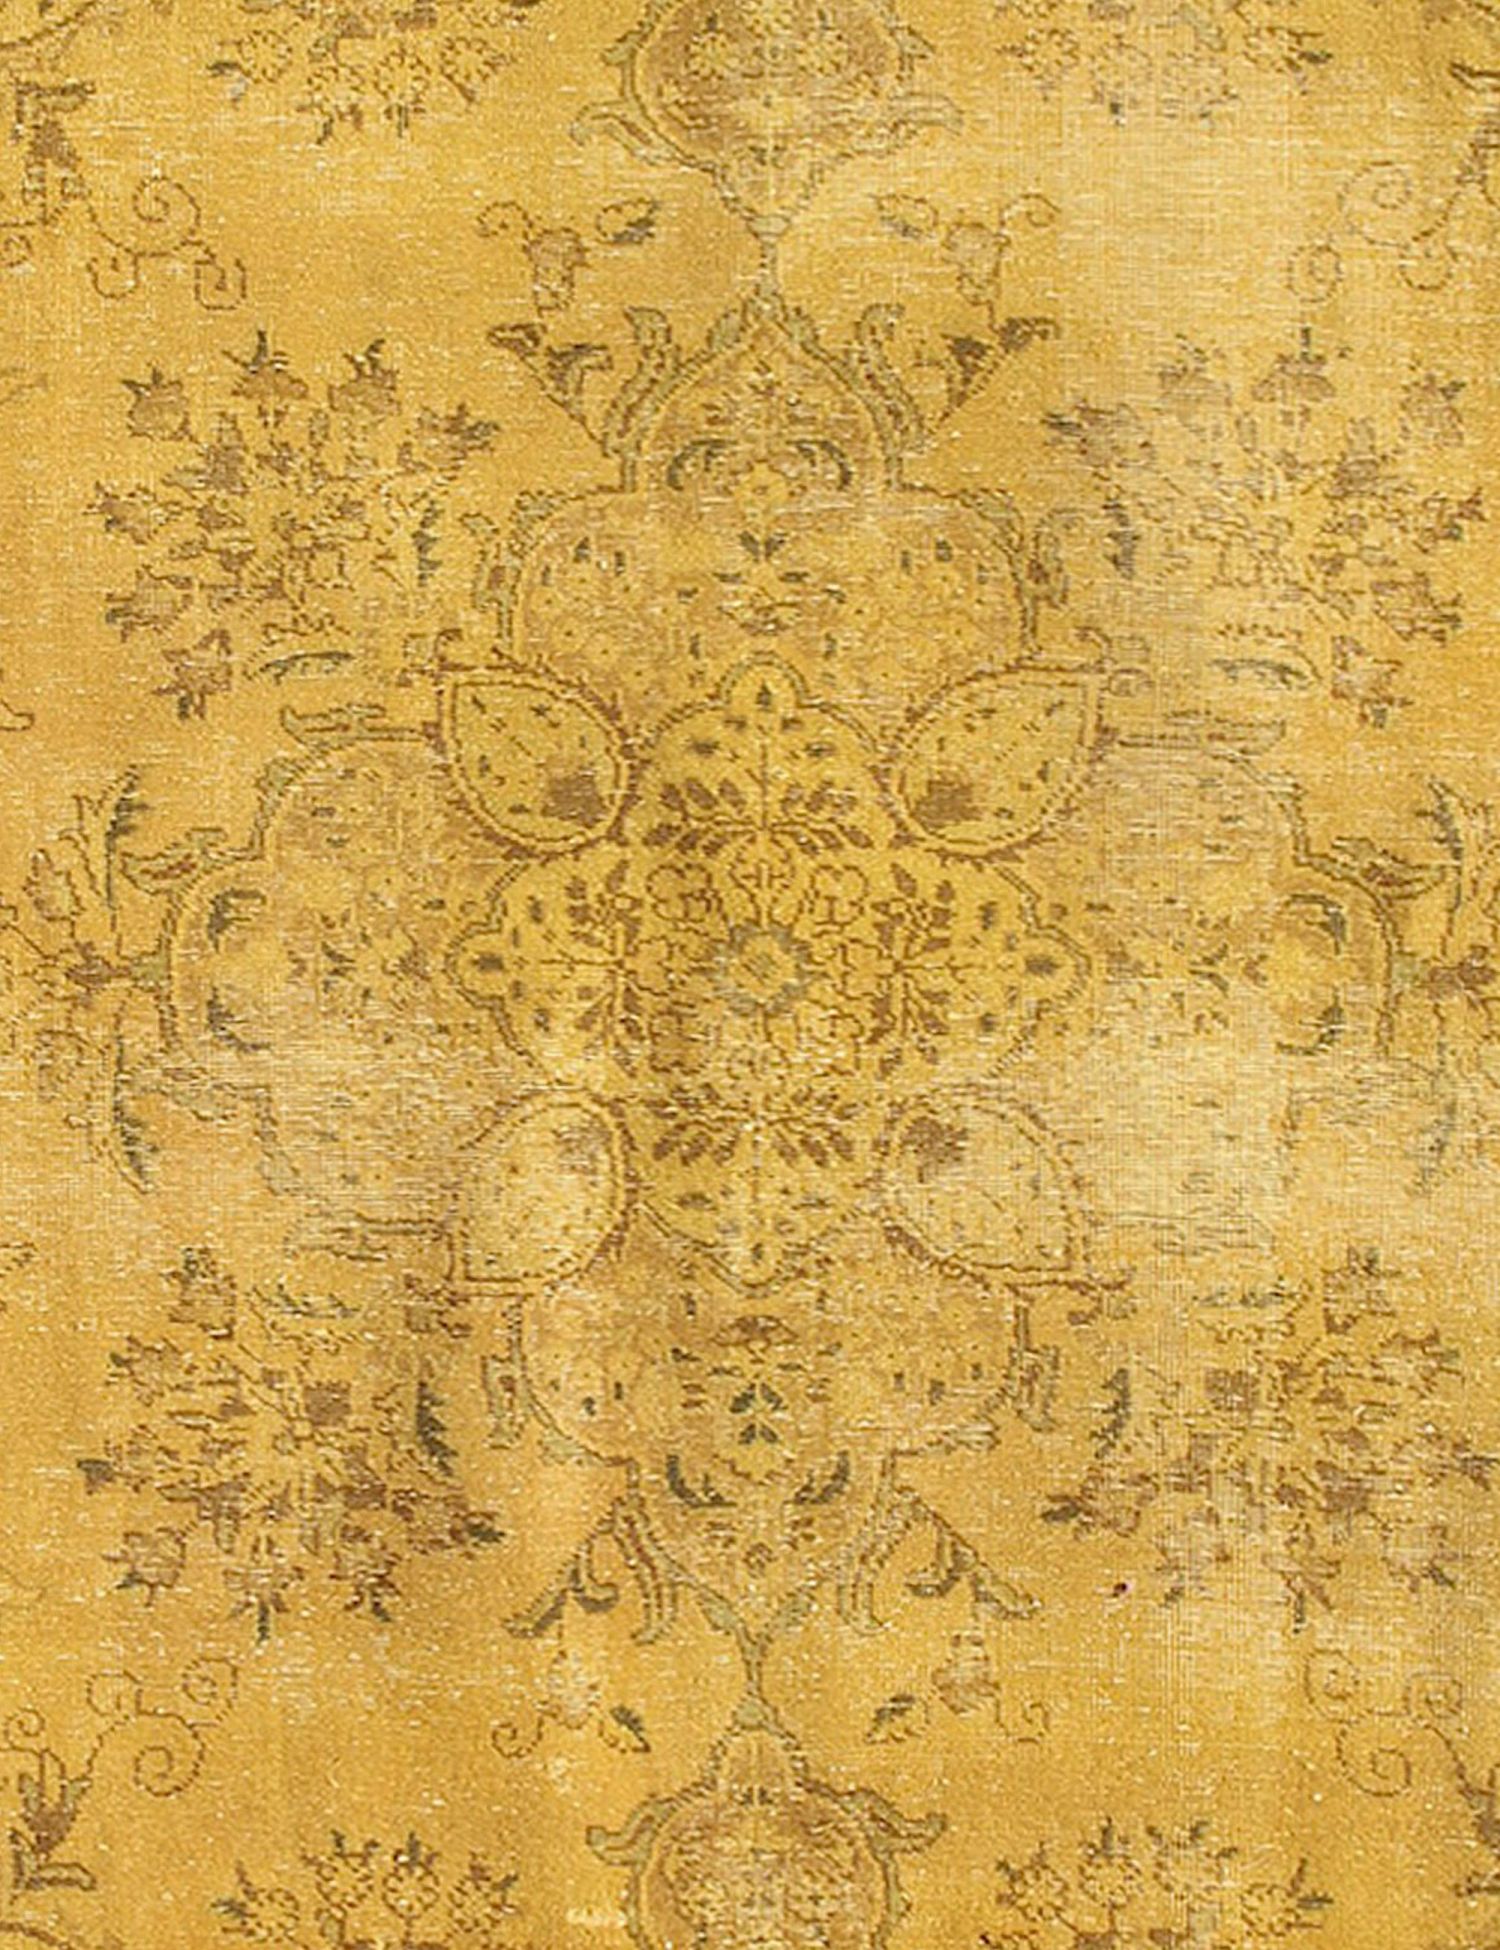 Persischer Vintage Teppich  gelb <br/>215 x 175 cm